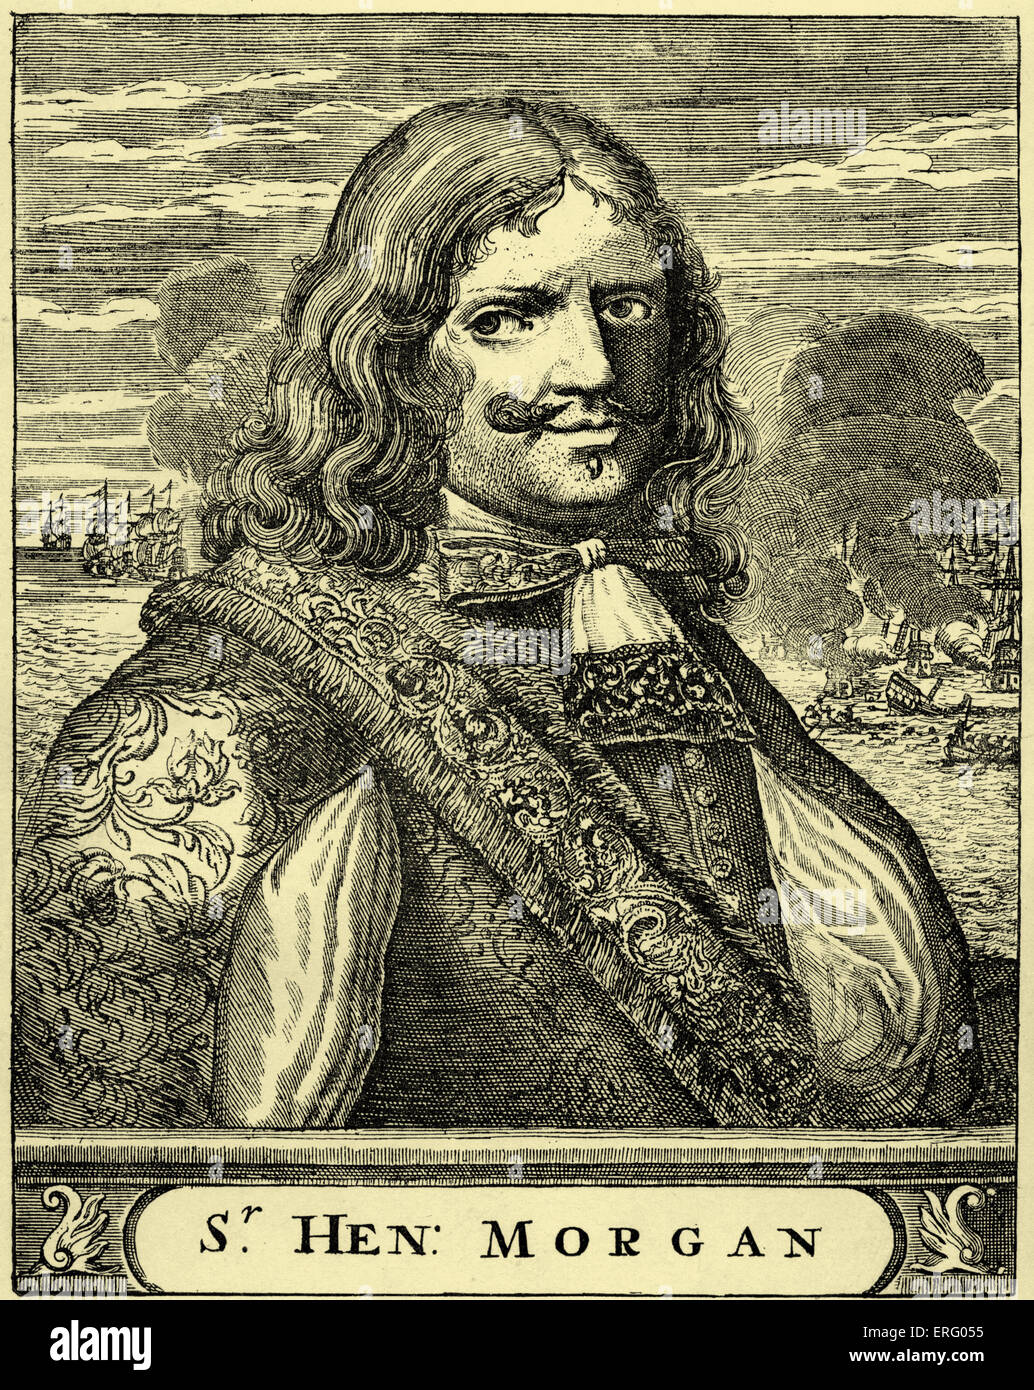 Sir Henry Morgan, gravure. Portrait du célèbre corsaire, corsaire gallois dans les Caraïbes dans les années 1660 et 1670. Naissance Banque D'Images